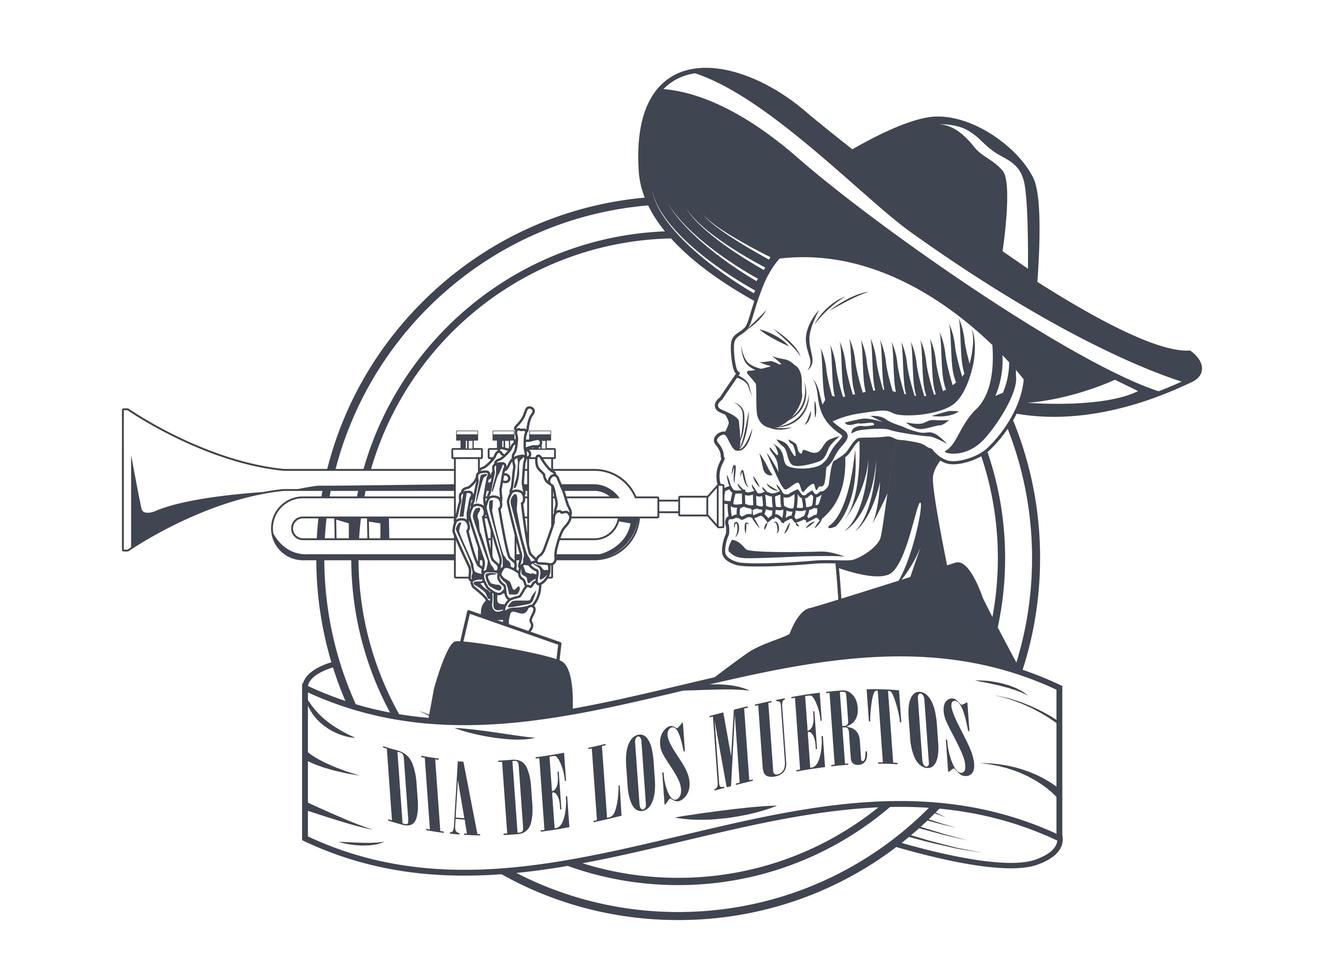 pôster de dia de los muertos com desenho de caveira de mariachi tocando trompete vetor